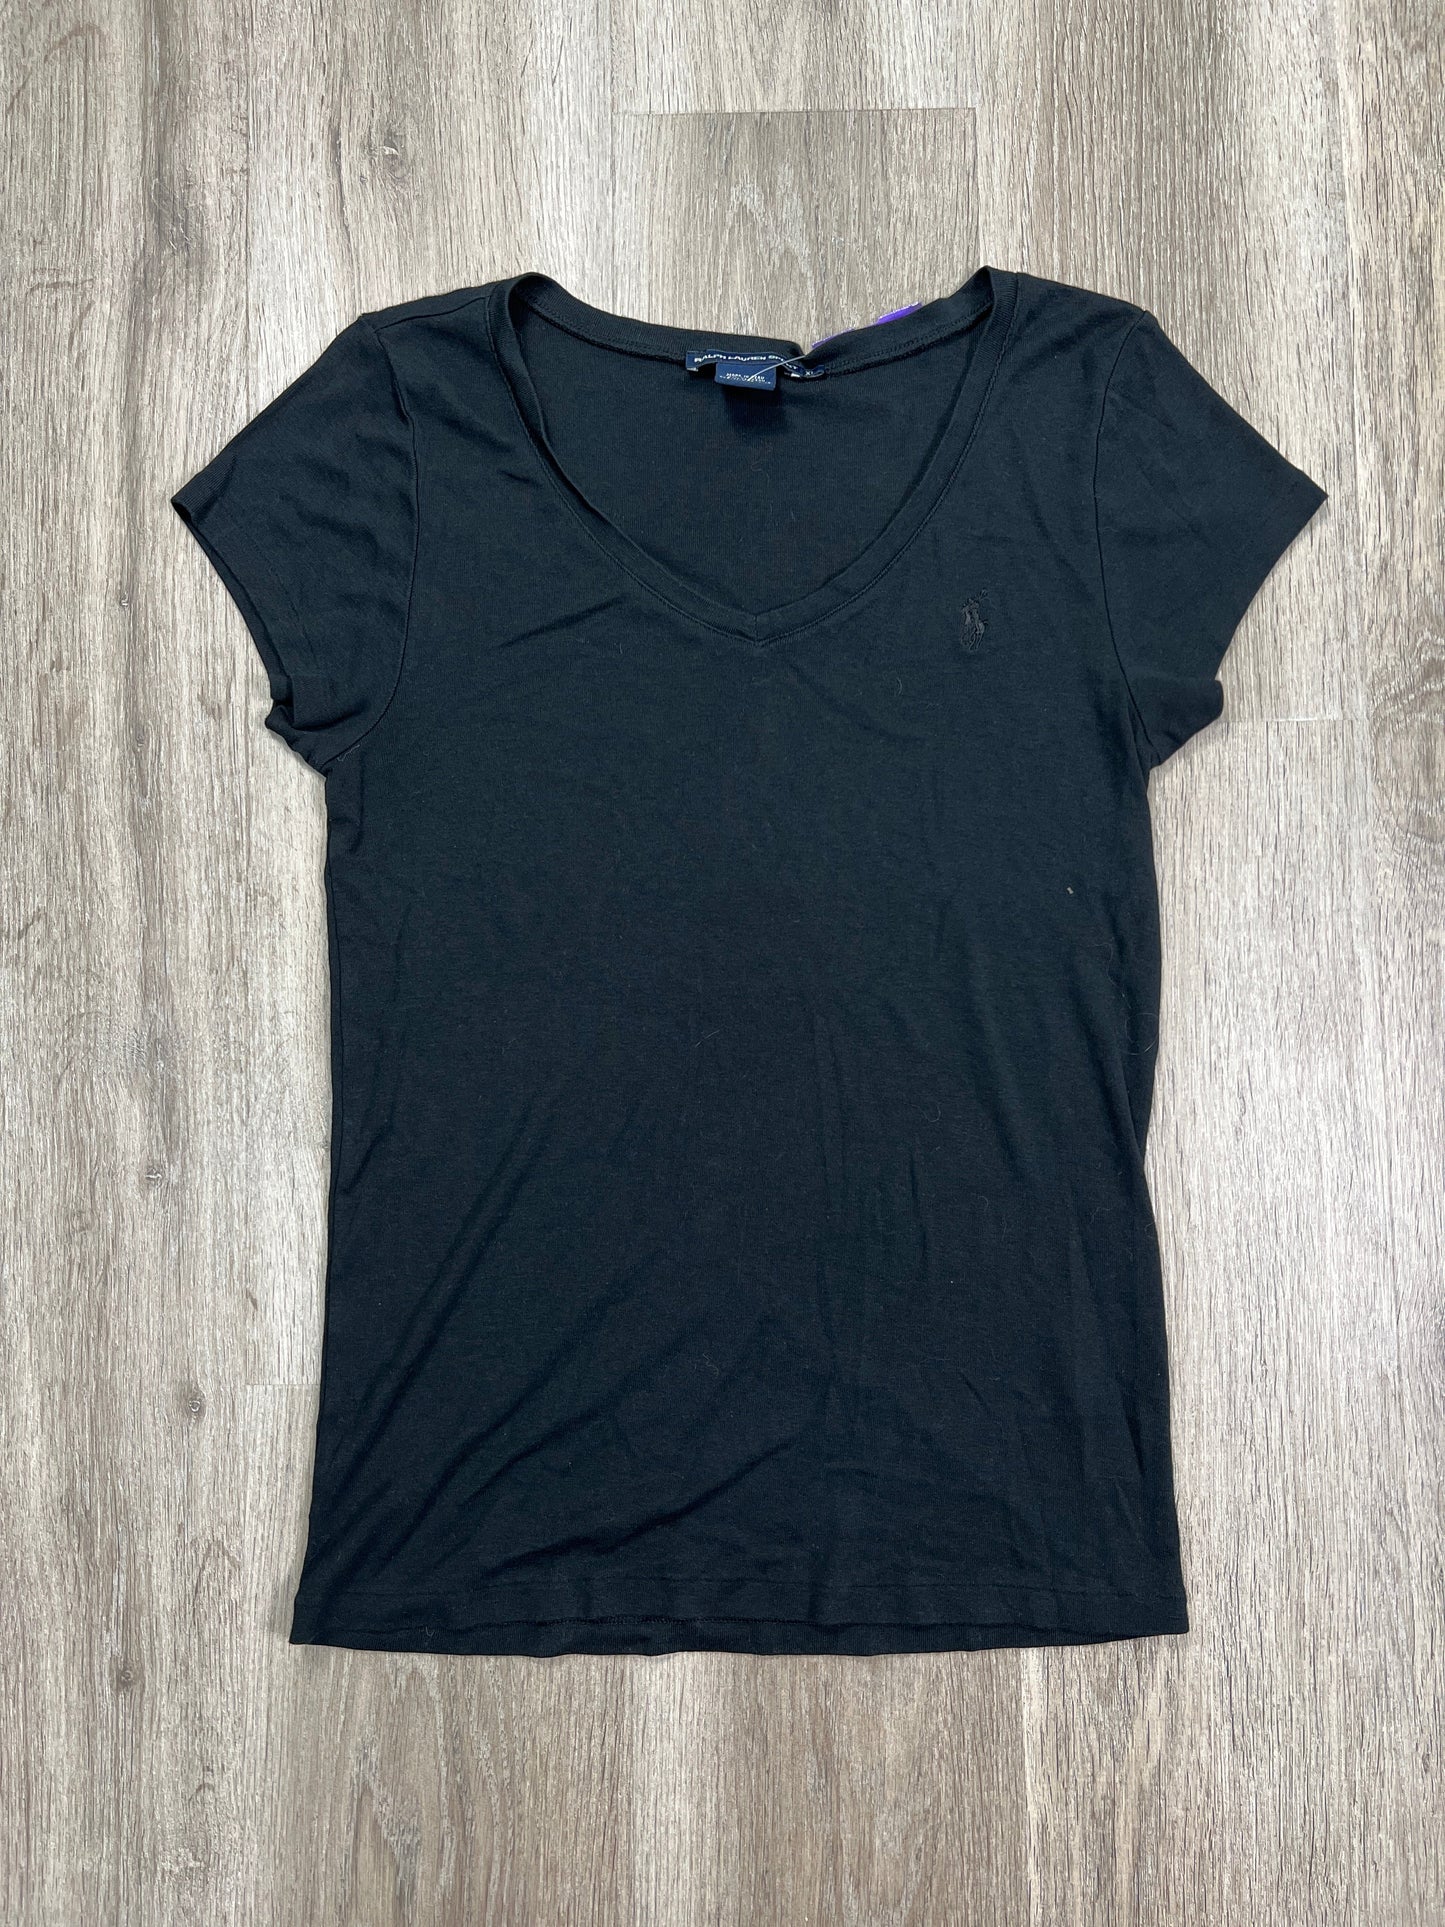 Top Short Sleeve Basic By Ralph Lauren  Size: Xl